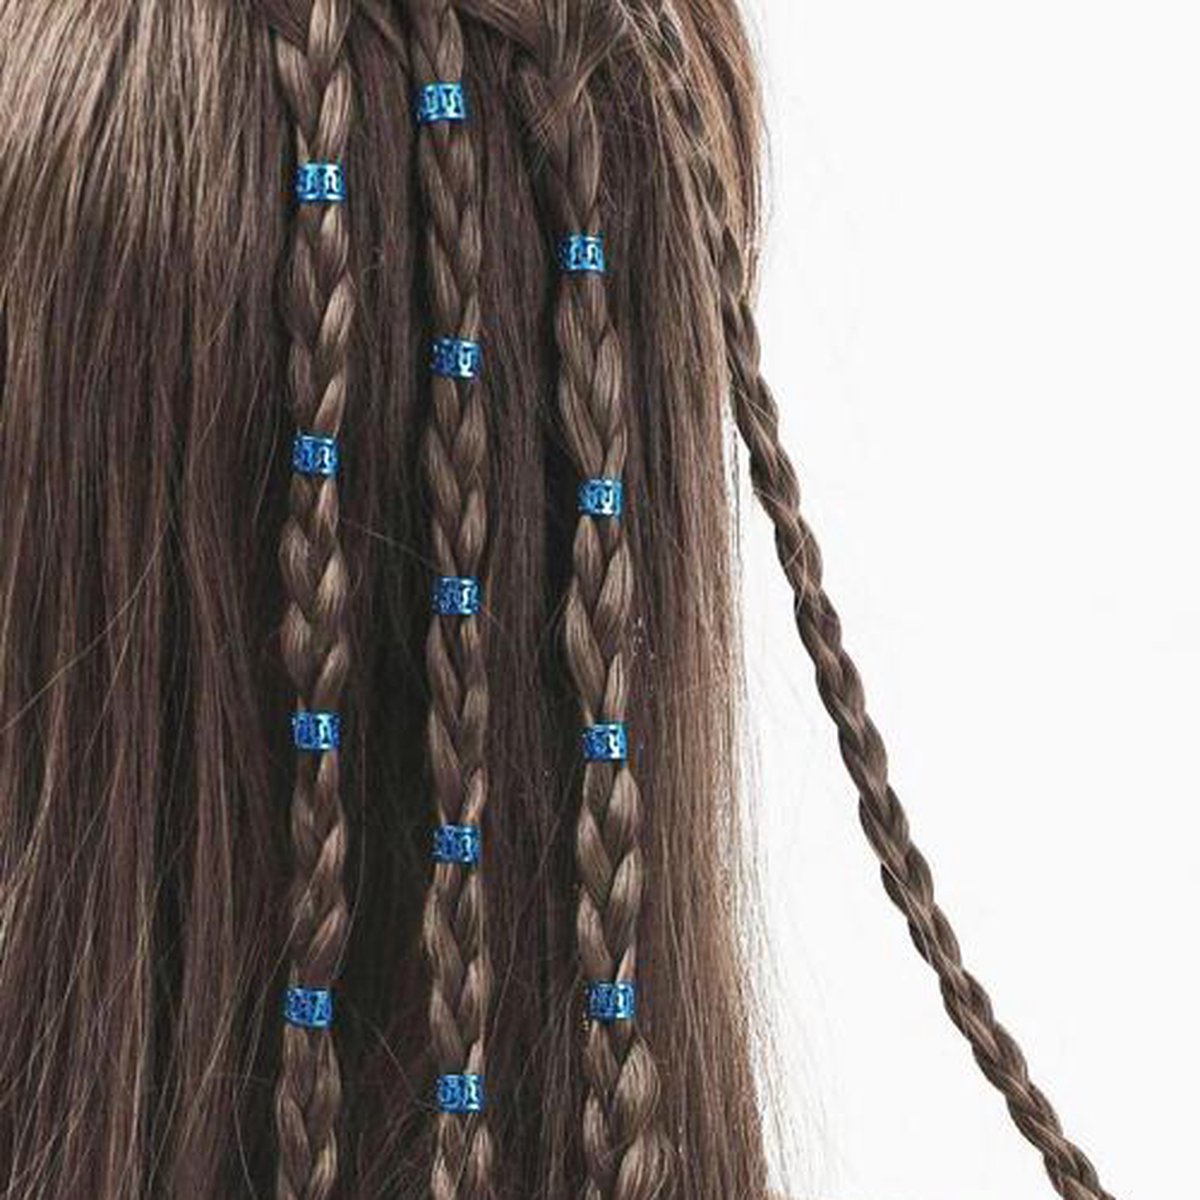 Haar Ringen Vlechten Blauw (40 stuks) - Haar Kralen - Haarringen dreadlock kralen - Kraaltjes / Clips - Haar Accessoires Vrouwen - Vlecht accessoires - Hair Beads Blue - 40 stuks